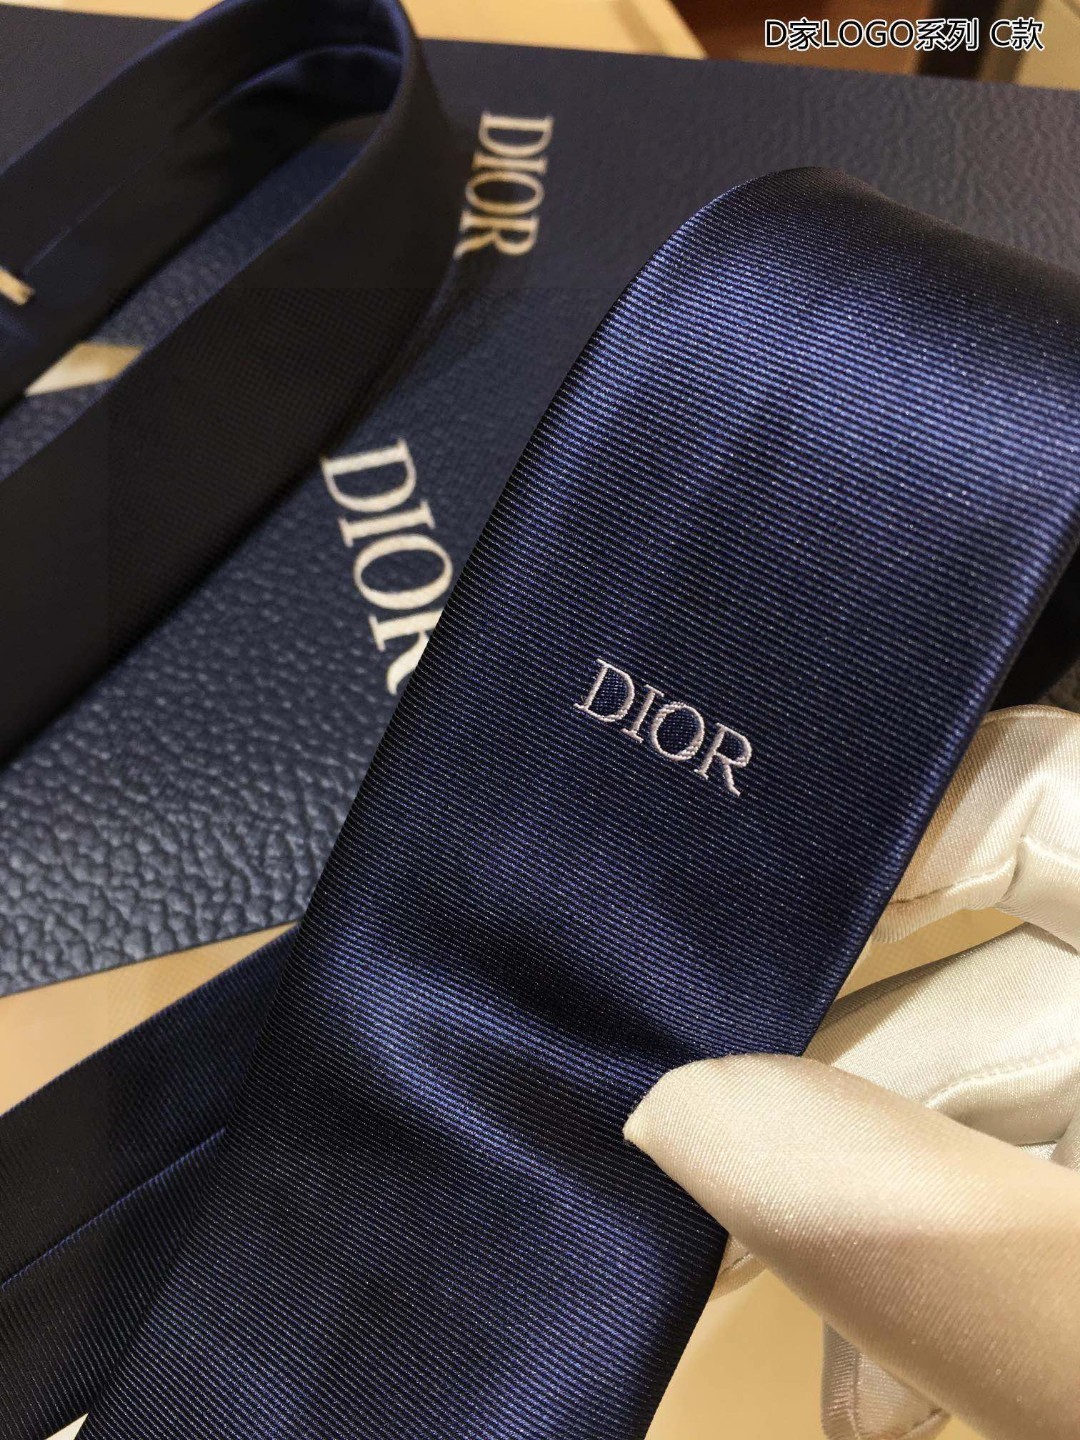 爆款到Do家新款领带配盒子Dior男